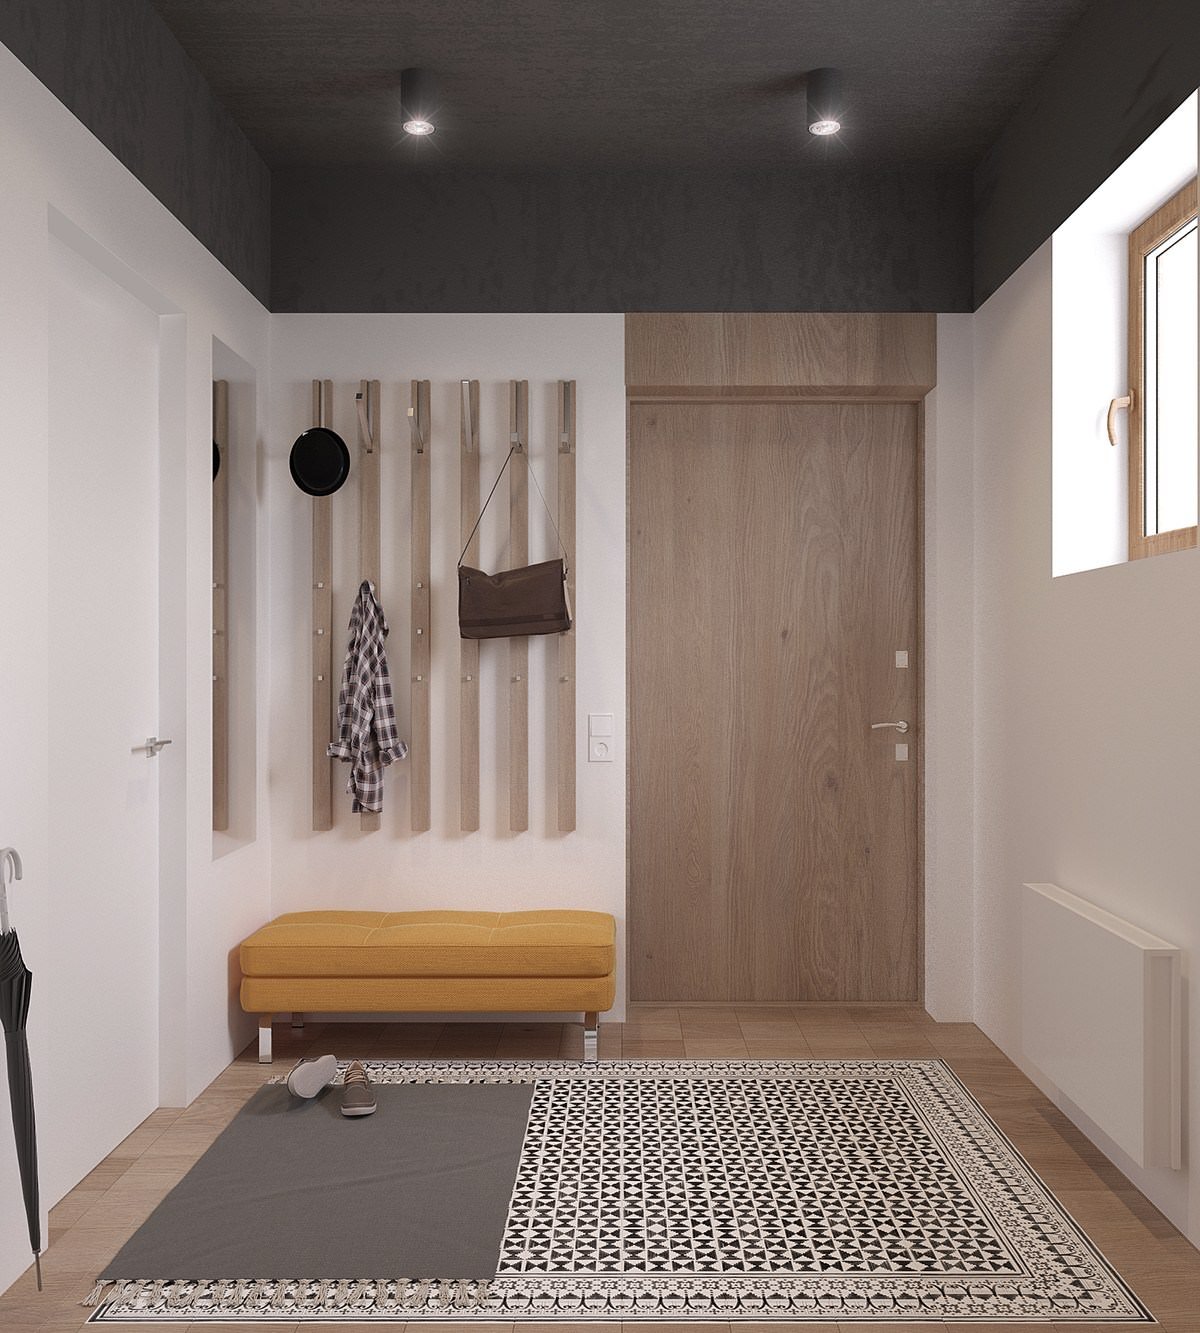 Ingresso casa con stupendo pavimento in mosaico bianco-nero e legno